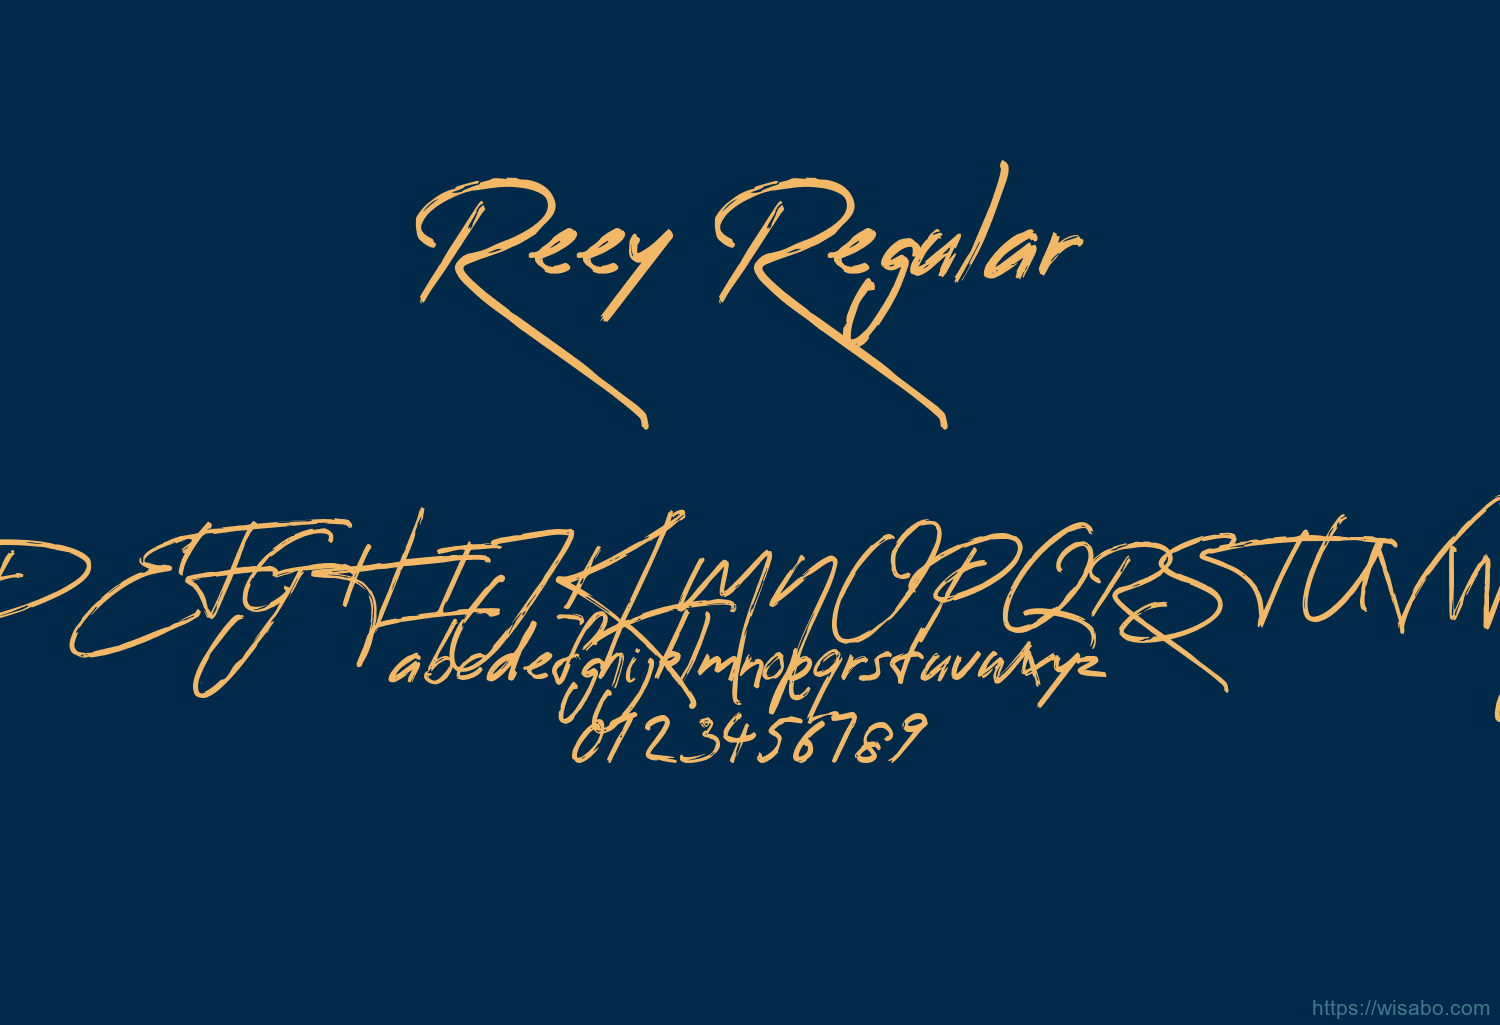 Reey Regular